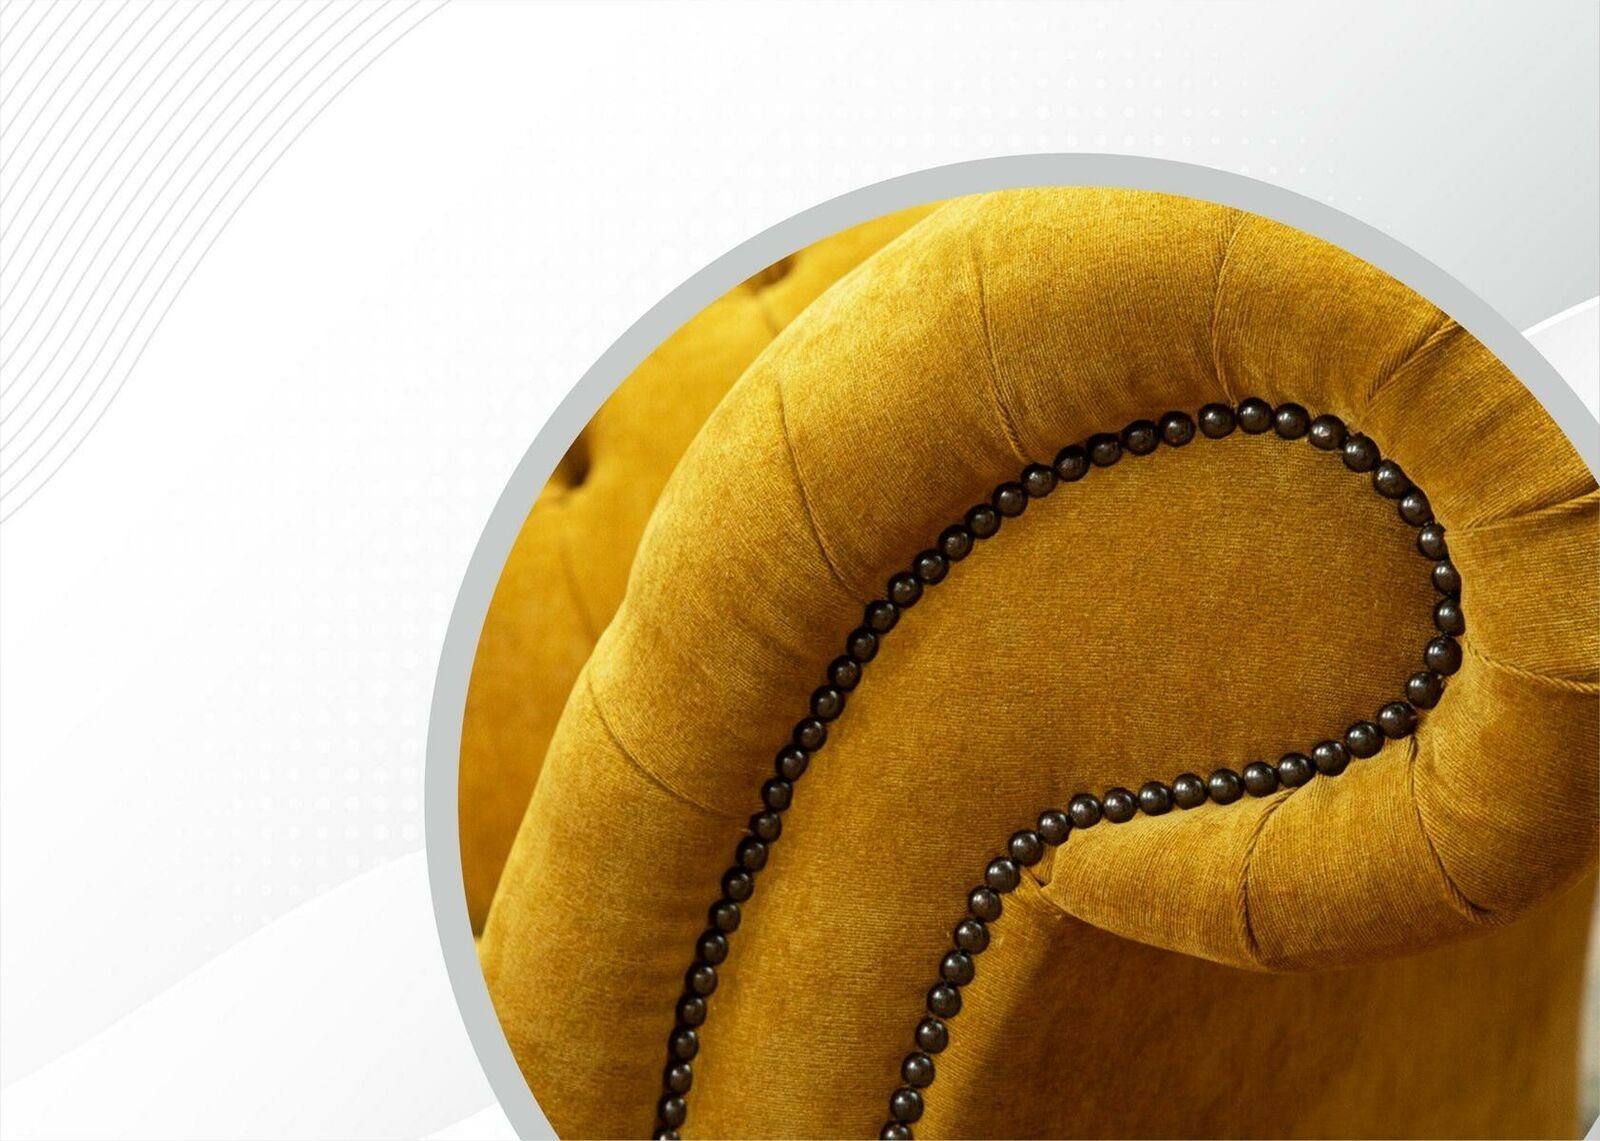 Chesterfield-Sofa Europe Neu, Made Couch Dreisitzer luxus 3-er JVmoebel Möbel in Chesterfield Gelber